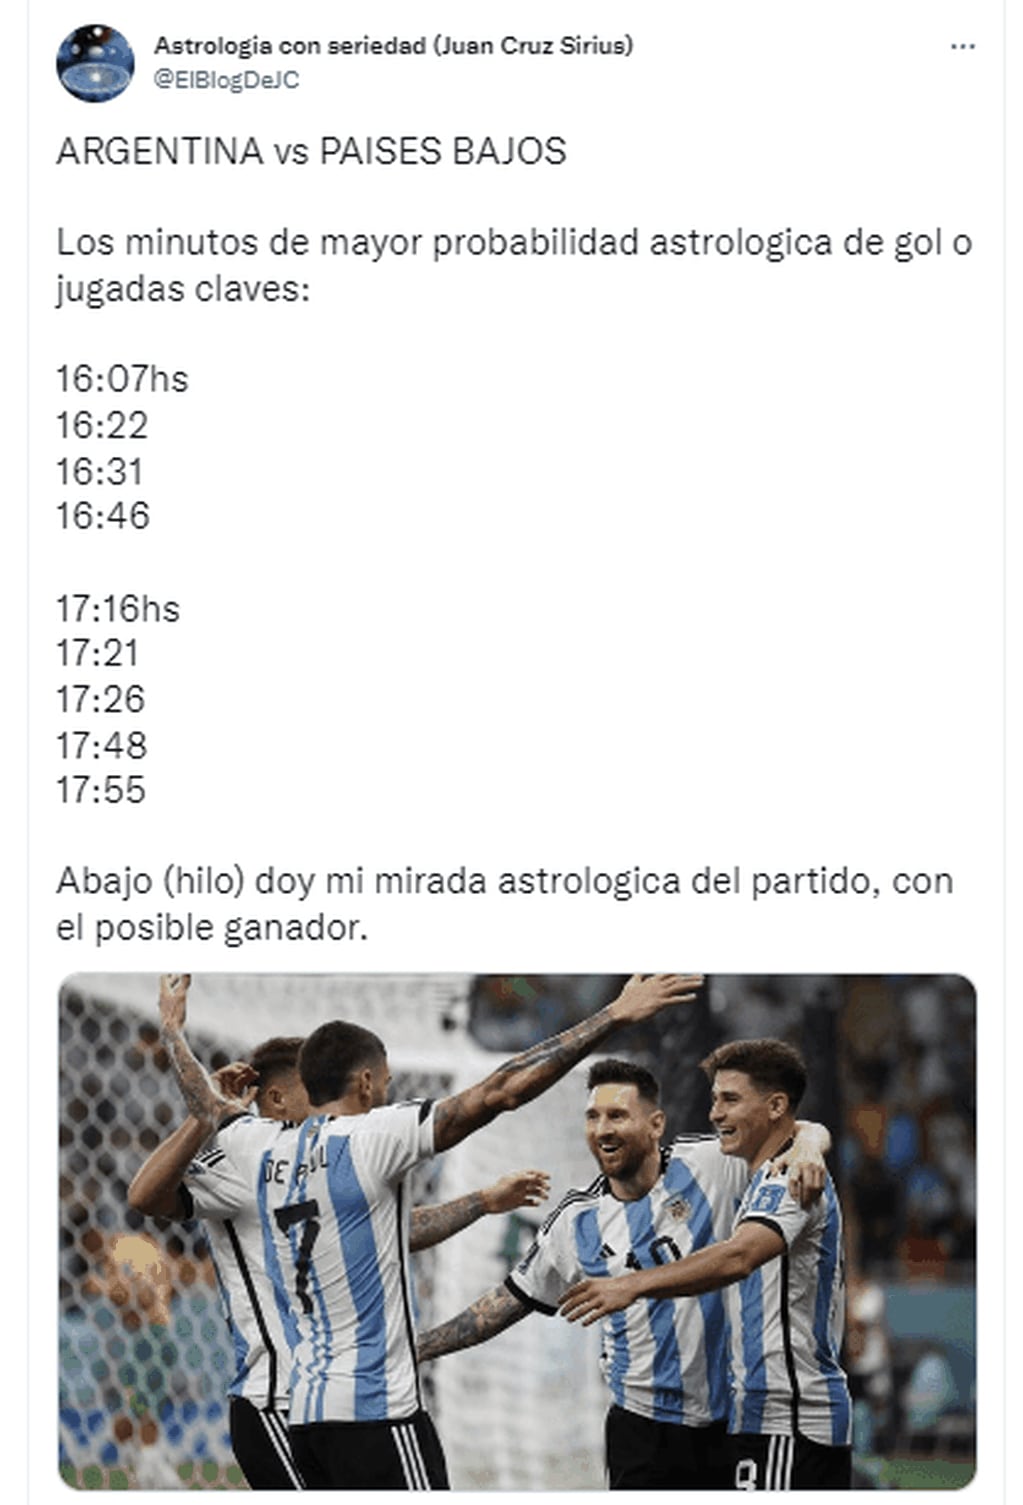 Las predicciones de Argentina vs Países Bajos